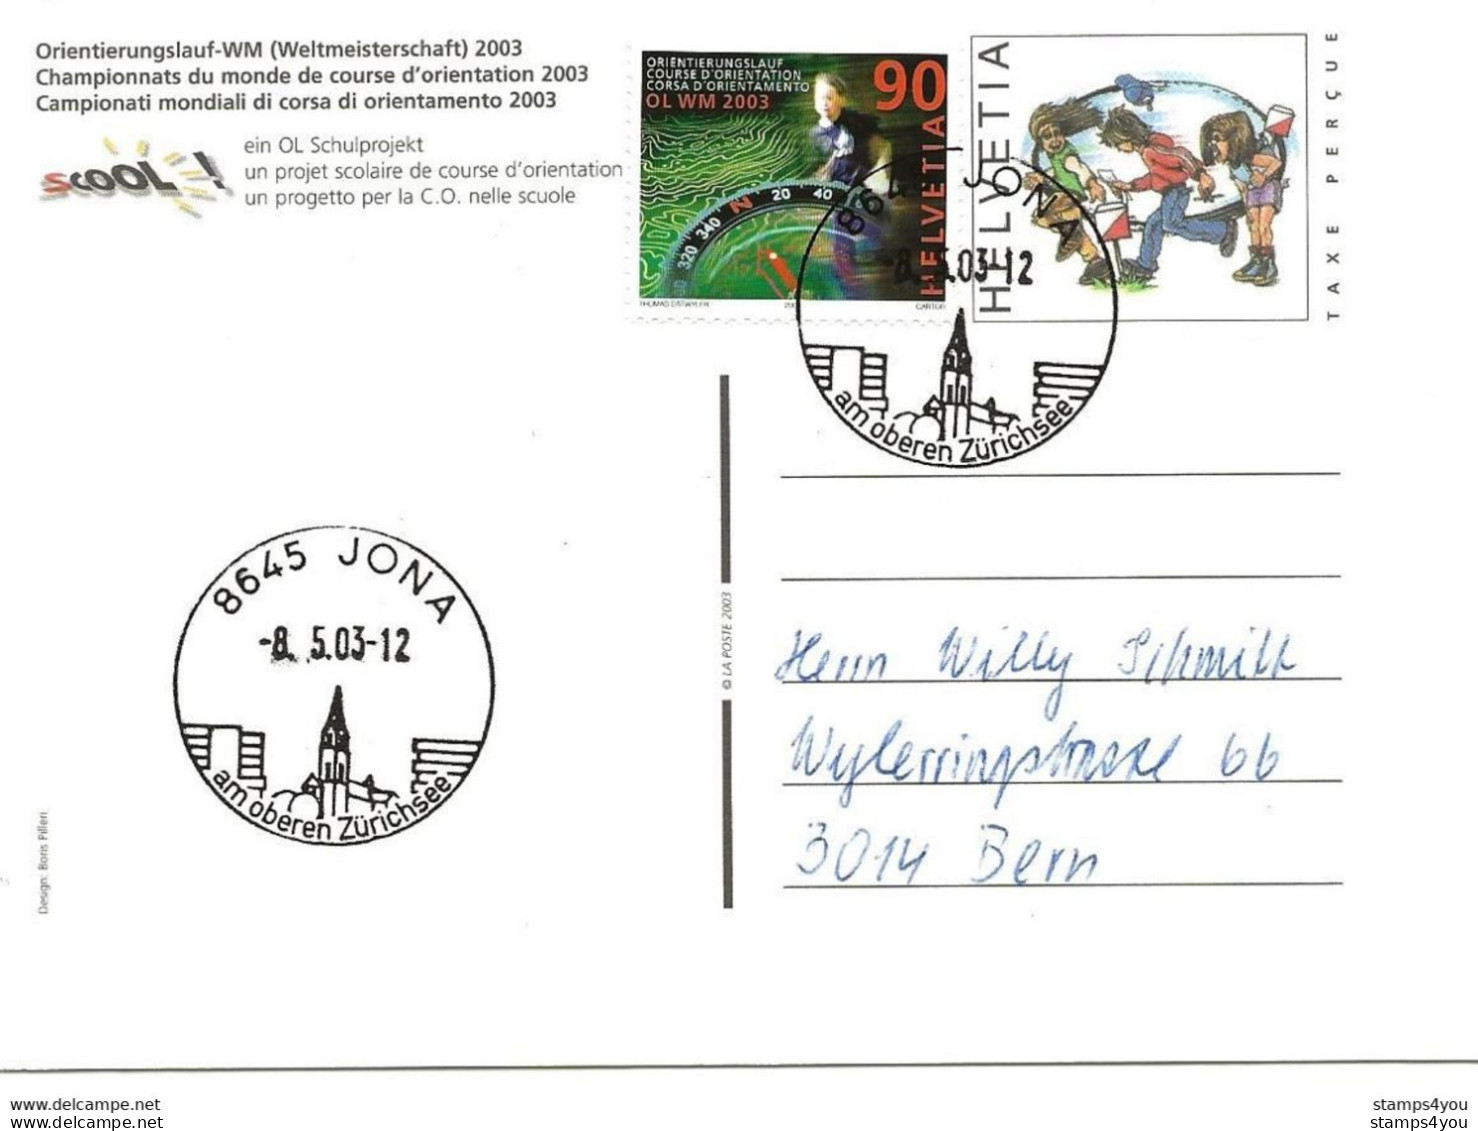 433 - 30 - Entier Postal  "Champ. Monde Course Orientation 2003" Cachets Illustrés Jona 2003 - Atletica